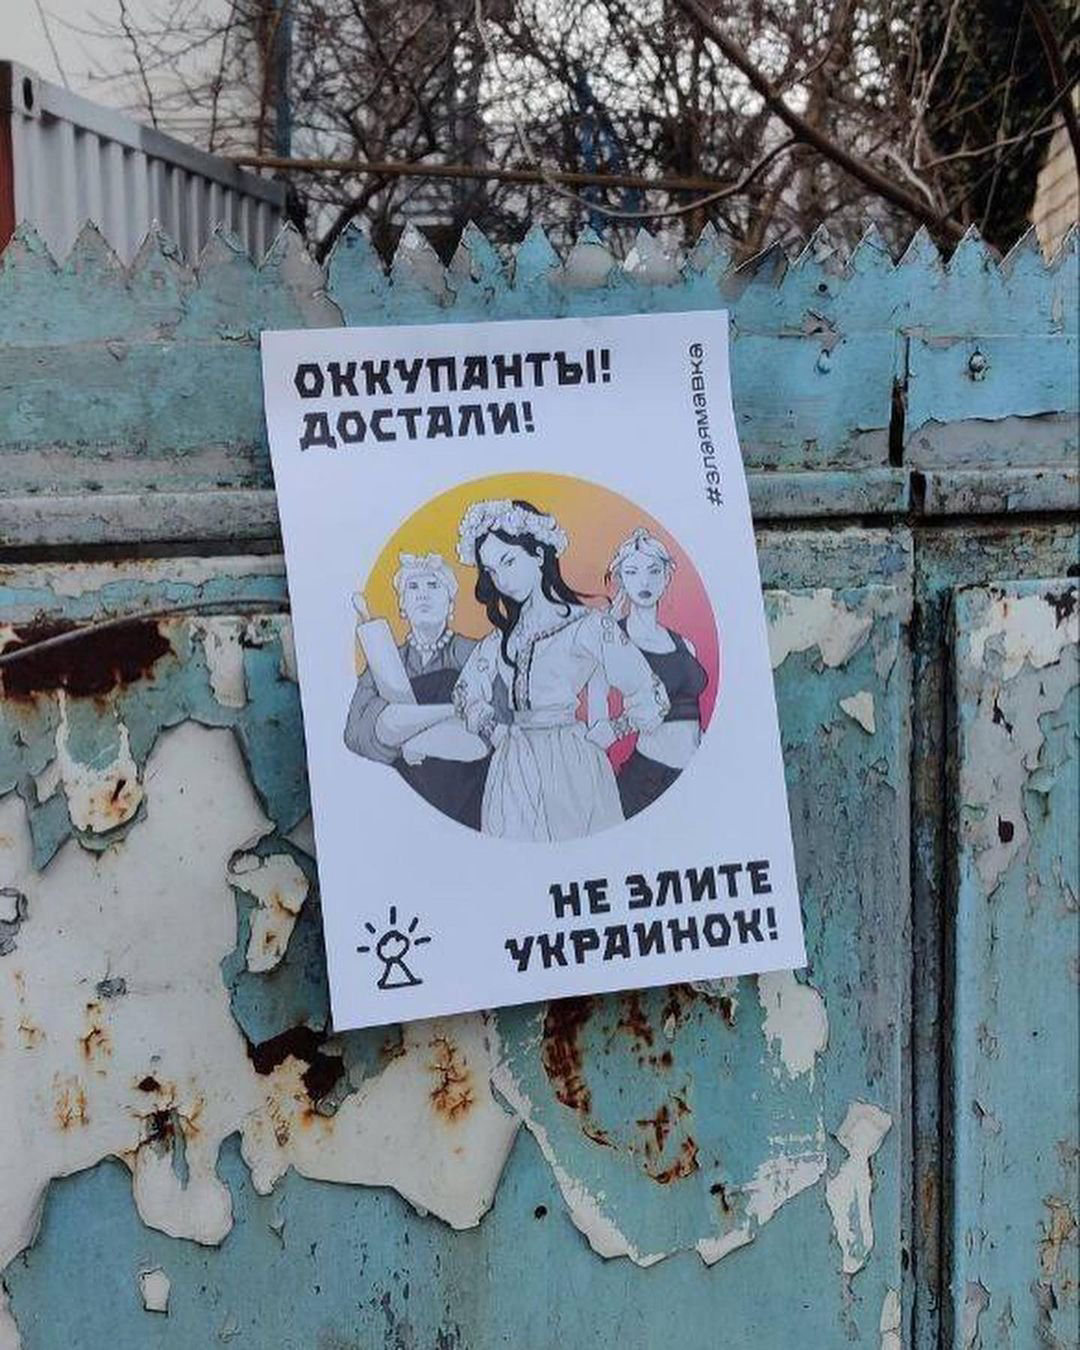 In Occupied Ukraine, Feminist Resistance Of An Underground Women's Brigade